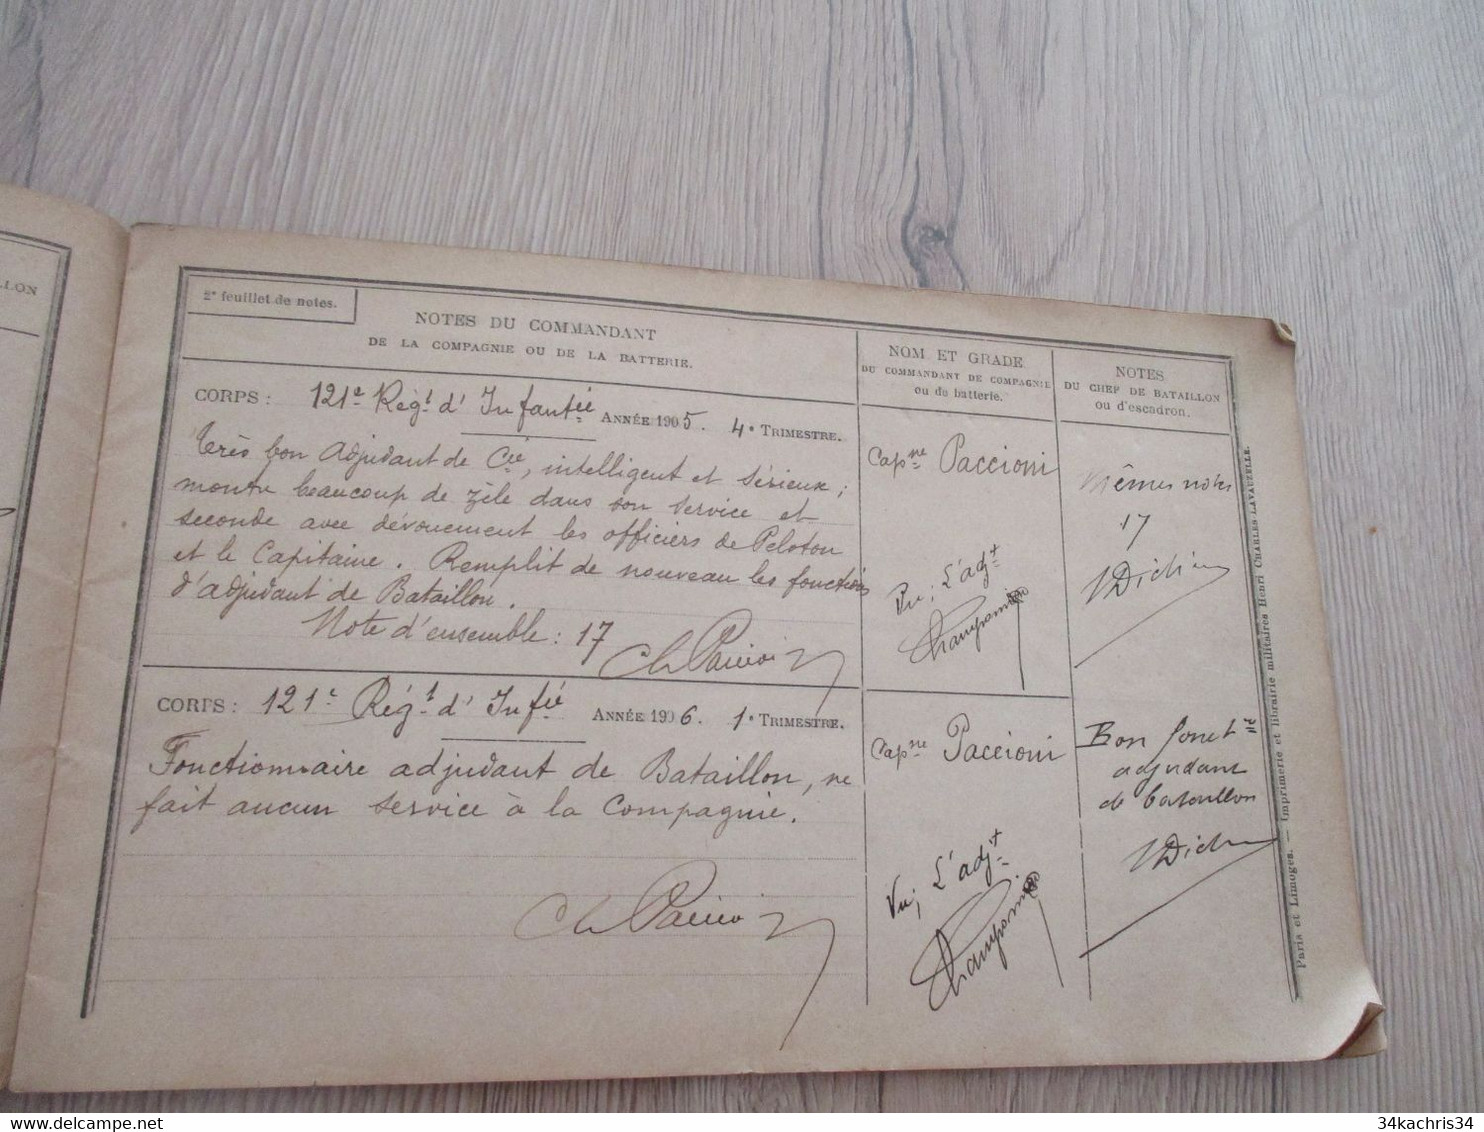 Rare 121 ème régiment Infanterie avec photo Champonnier carnet de notes 12 p manuscrites de commentaires su officier....